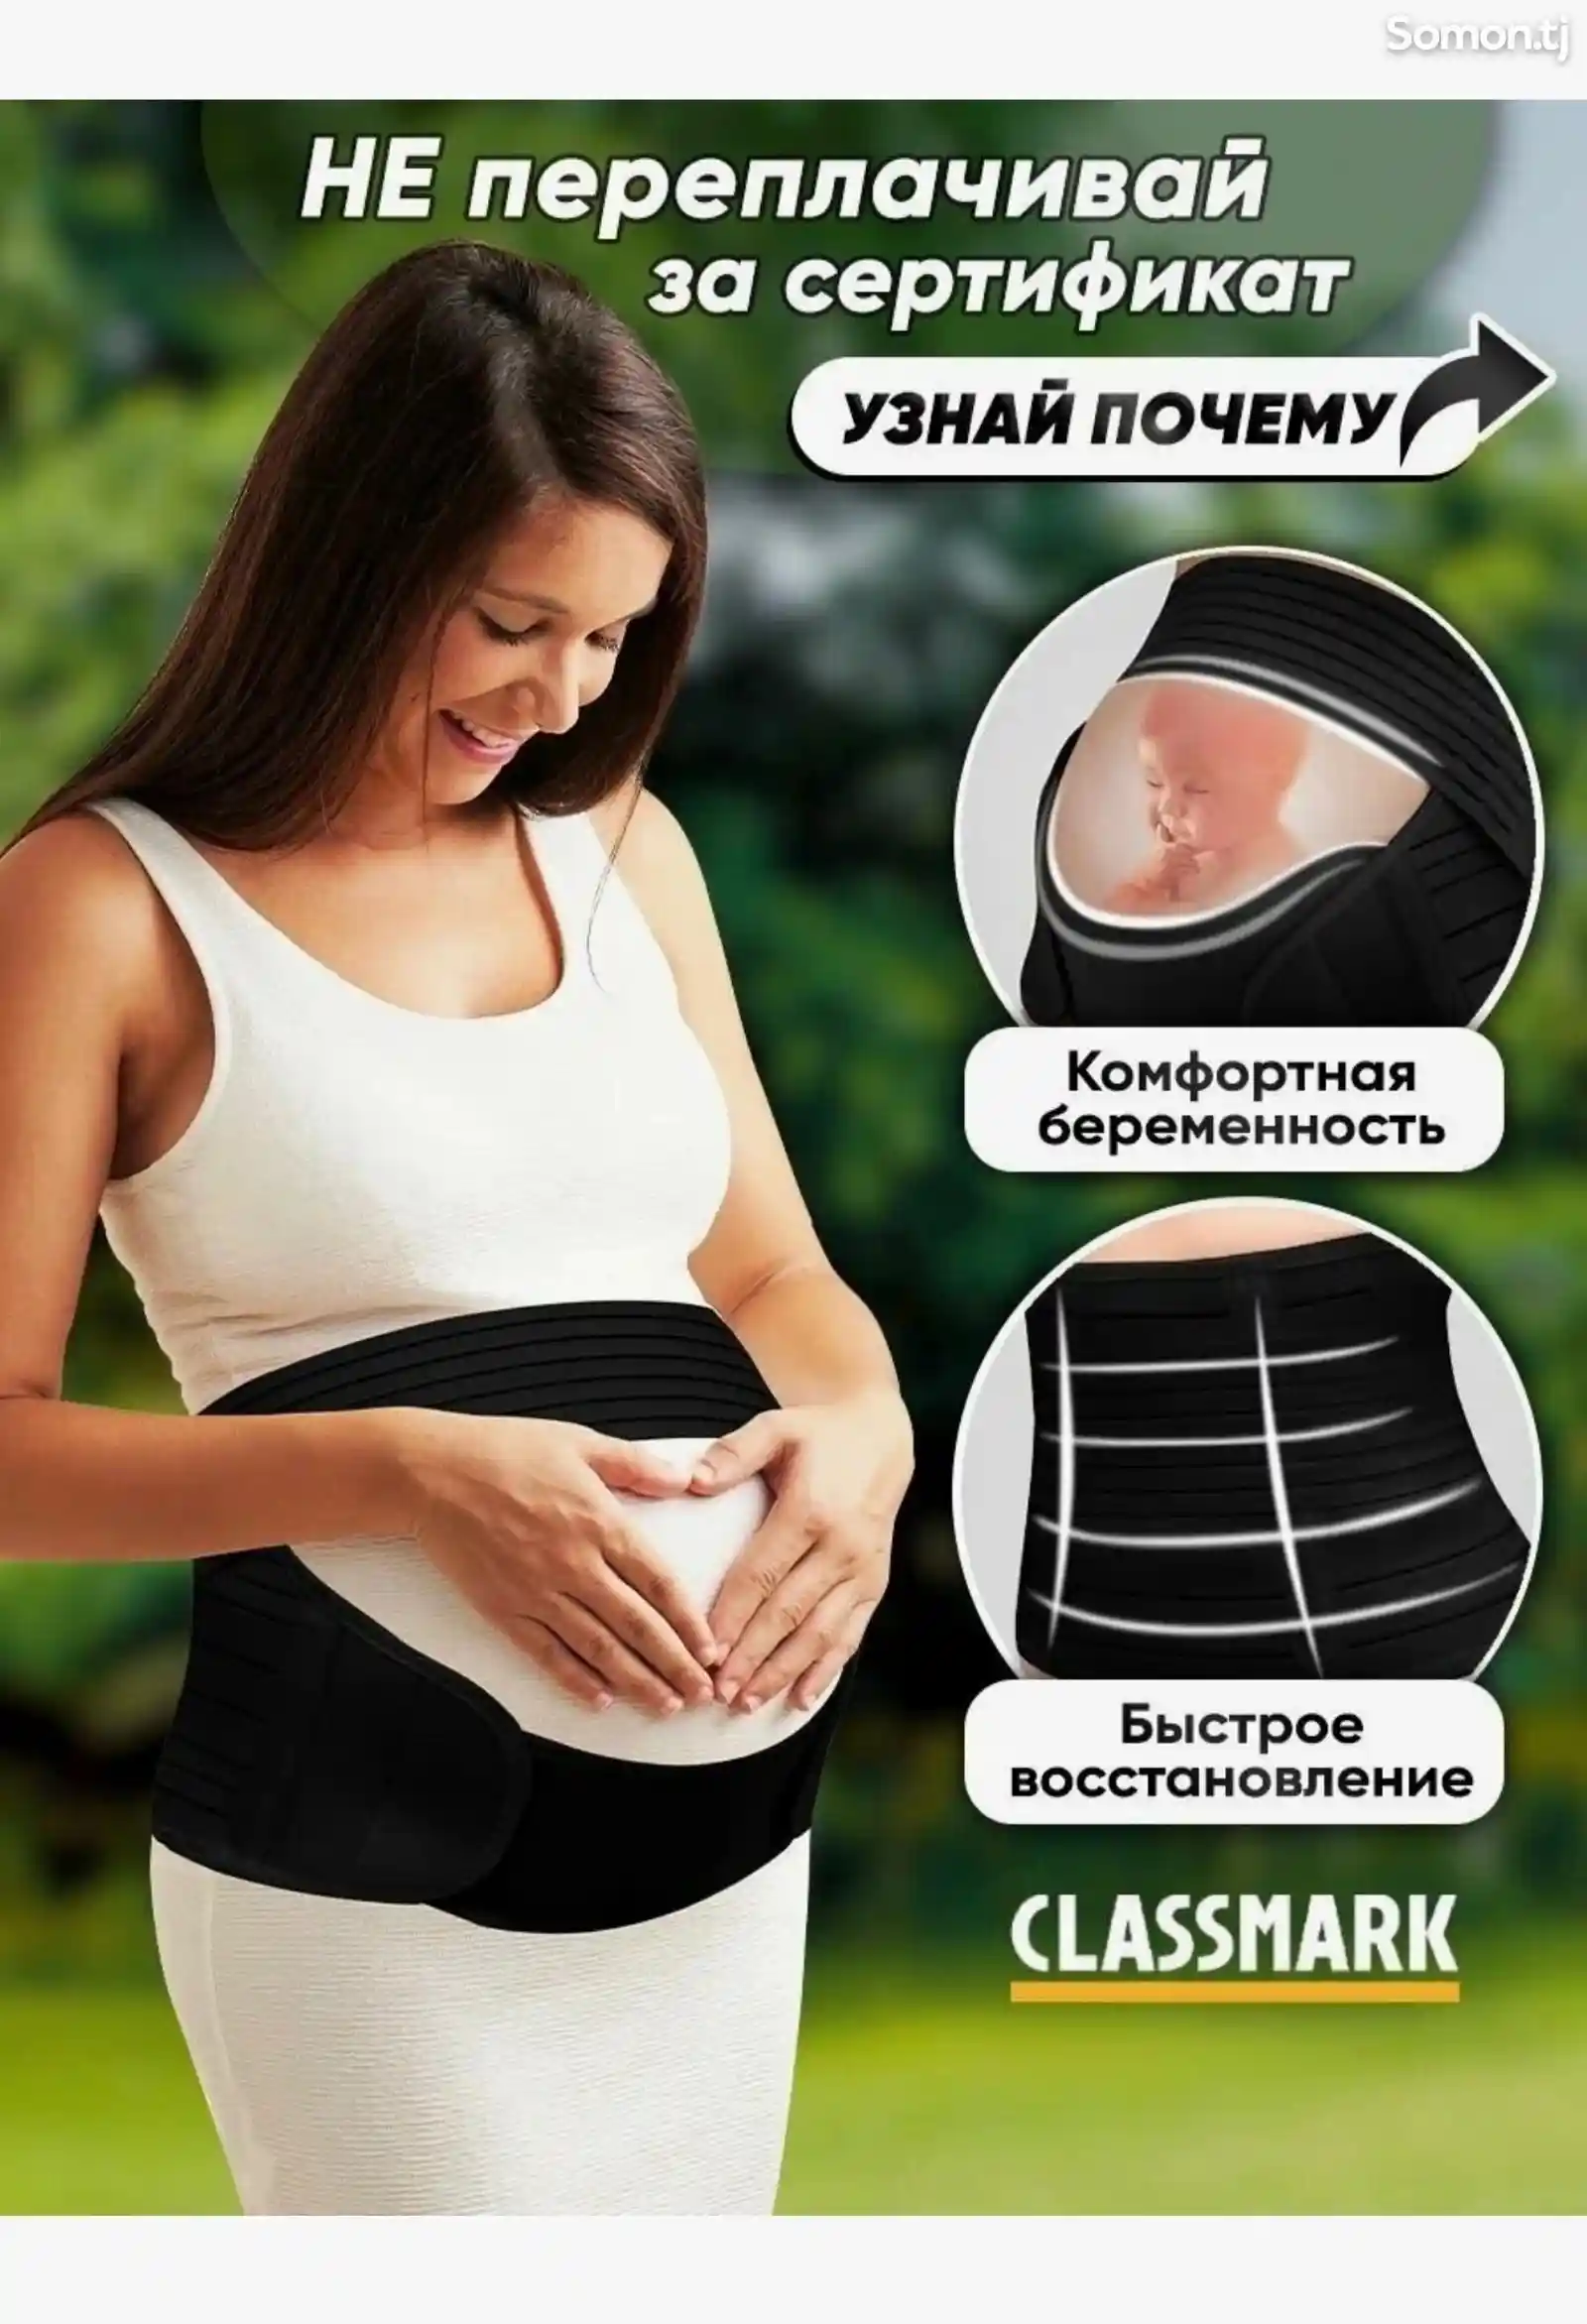 Бандаж для беременных-8